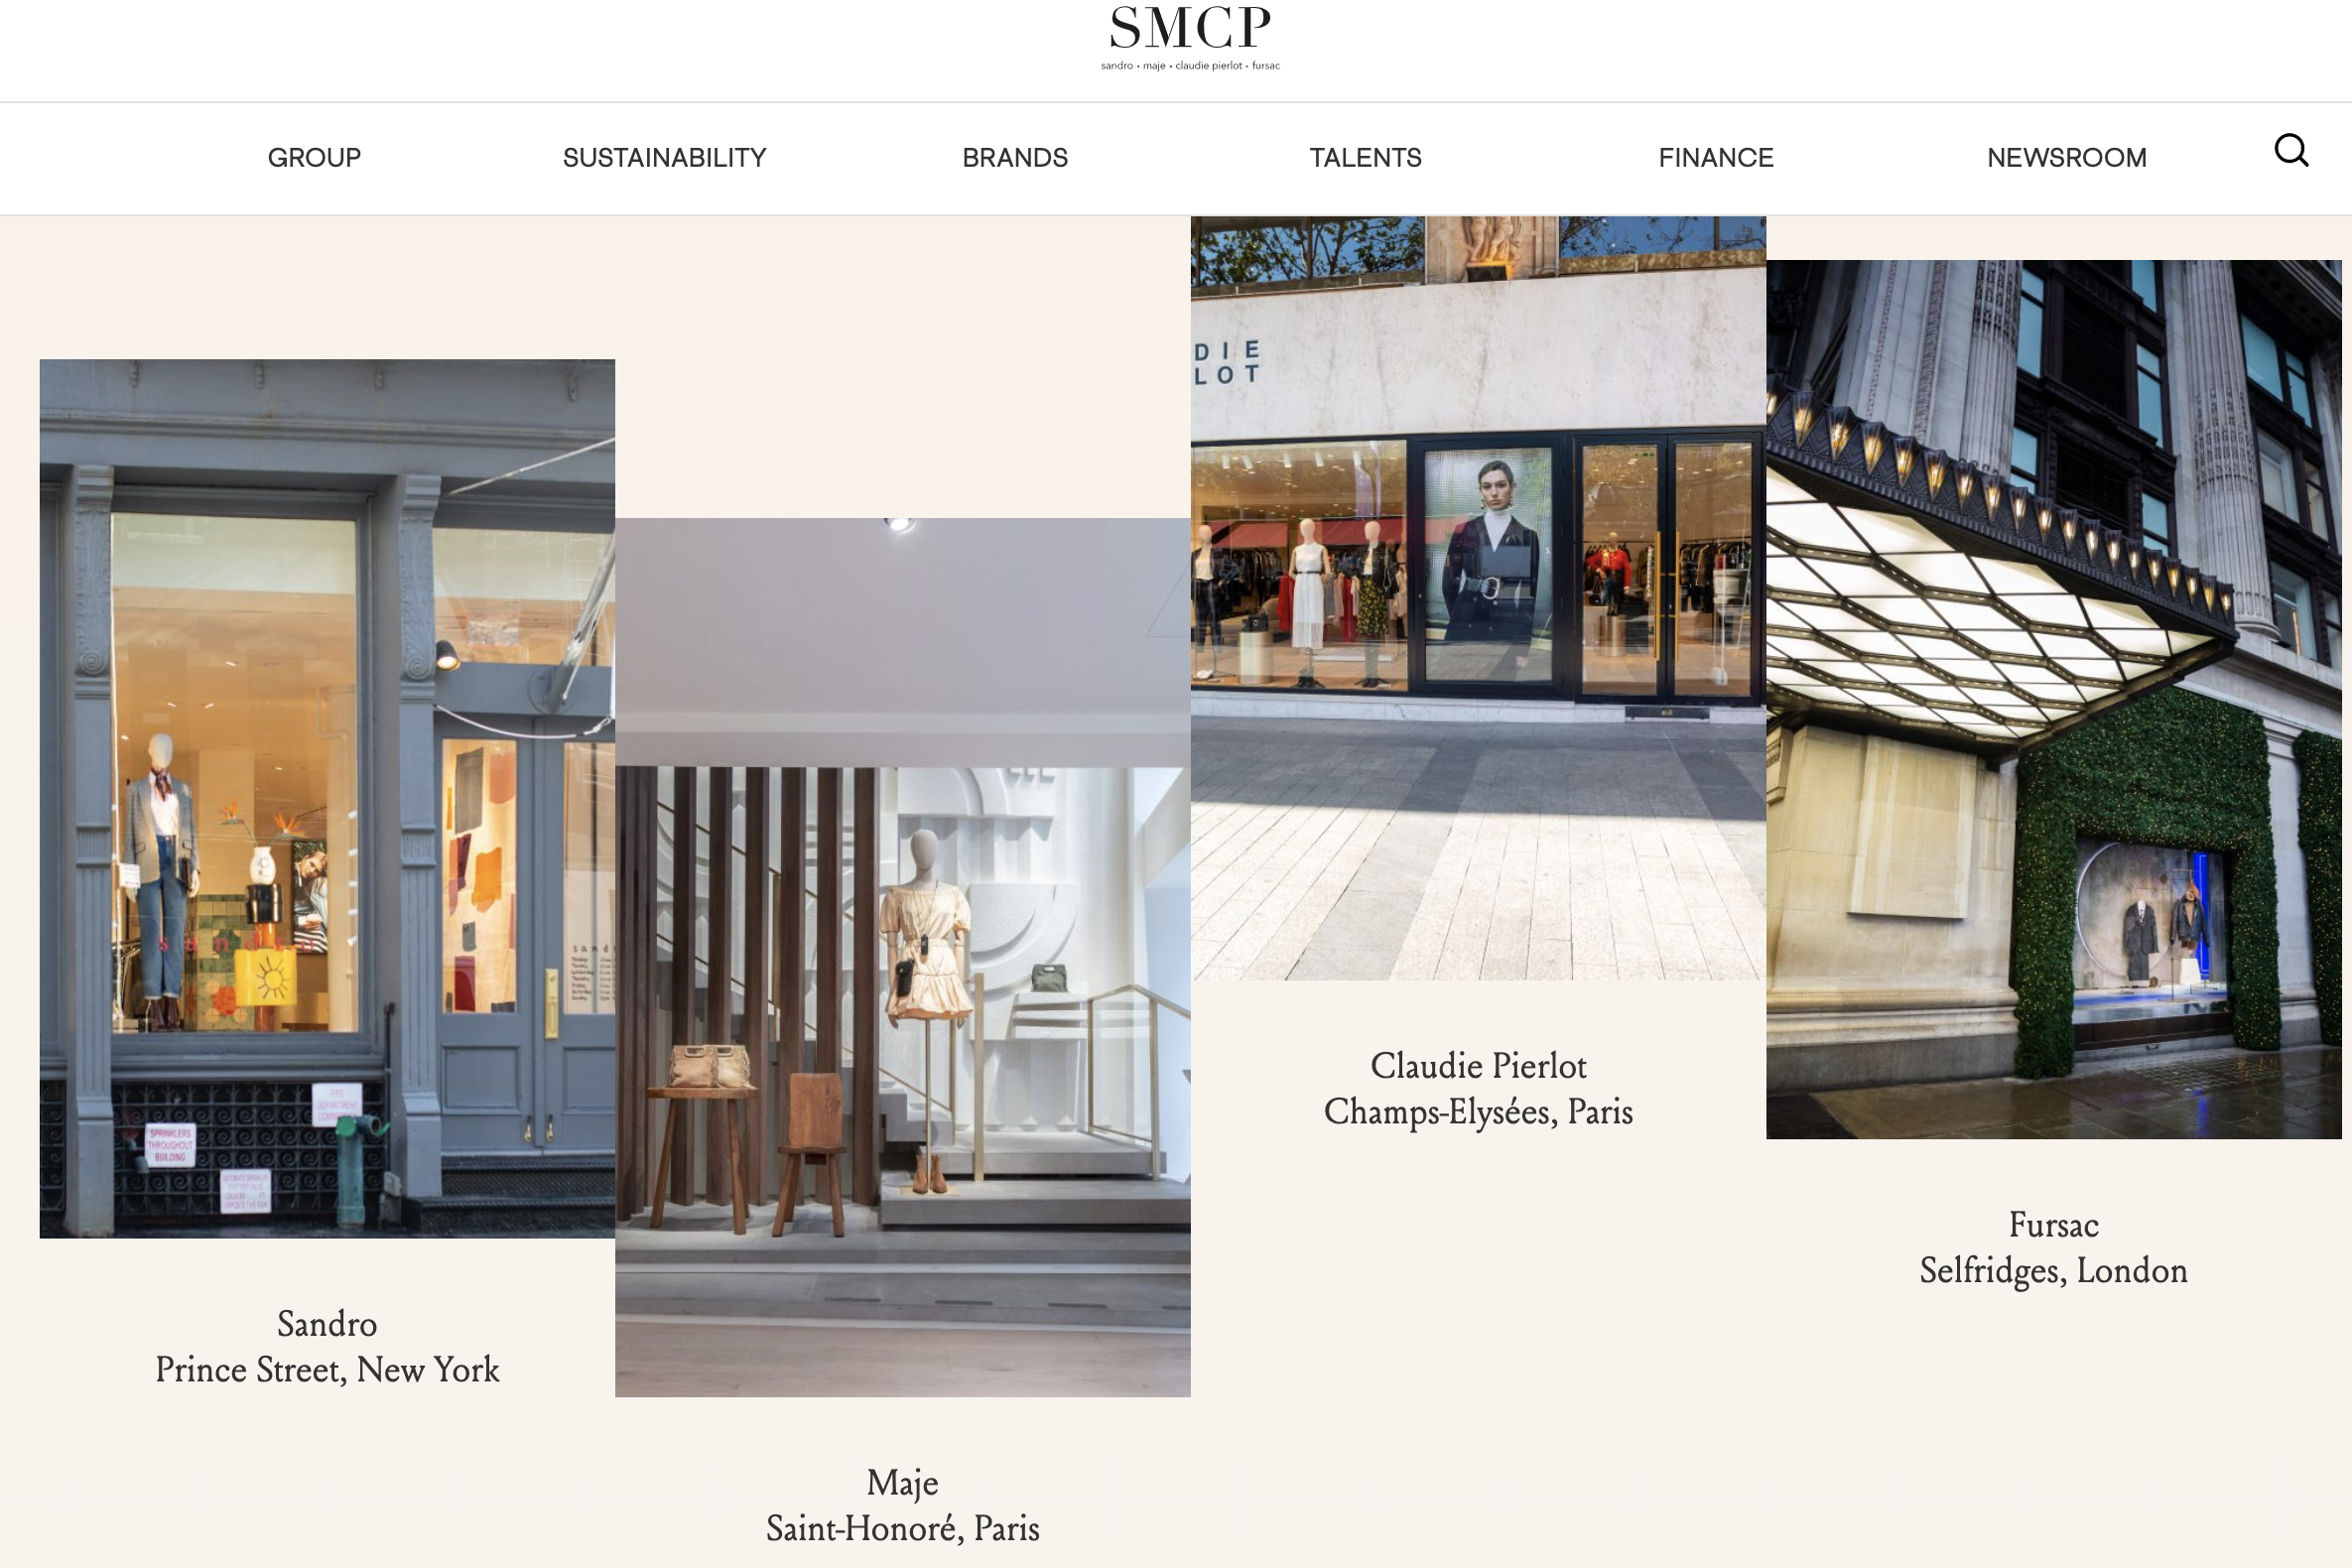 山东如意确认将退出法国时尚集团 SMCP，谁将成为新主人？